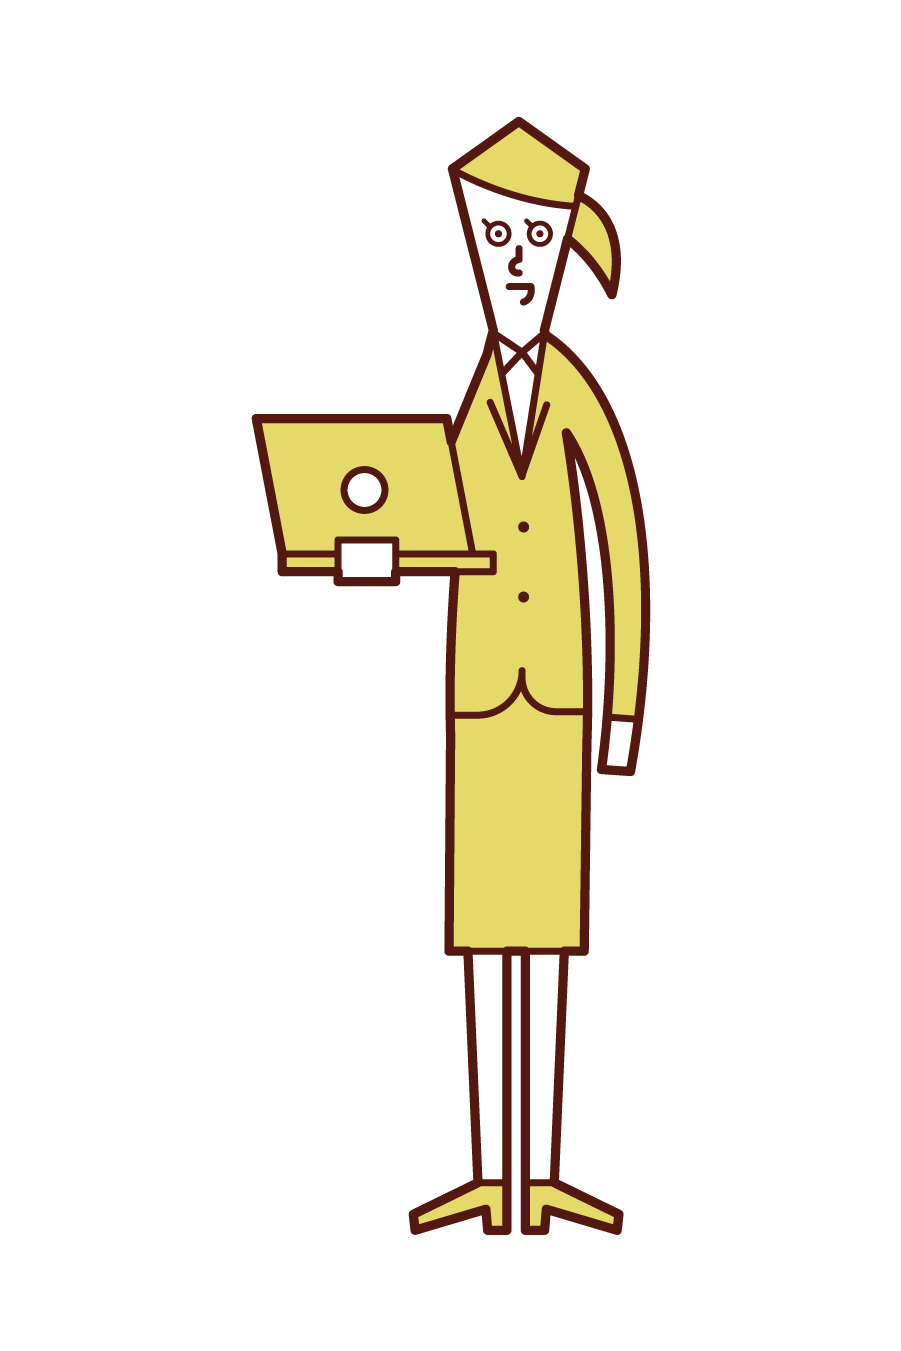 컴퓨터를 가진 사람 (여성)의 그림